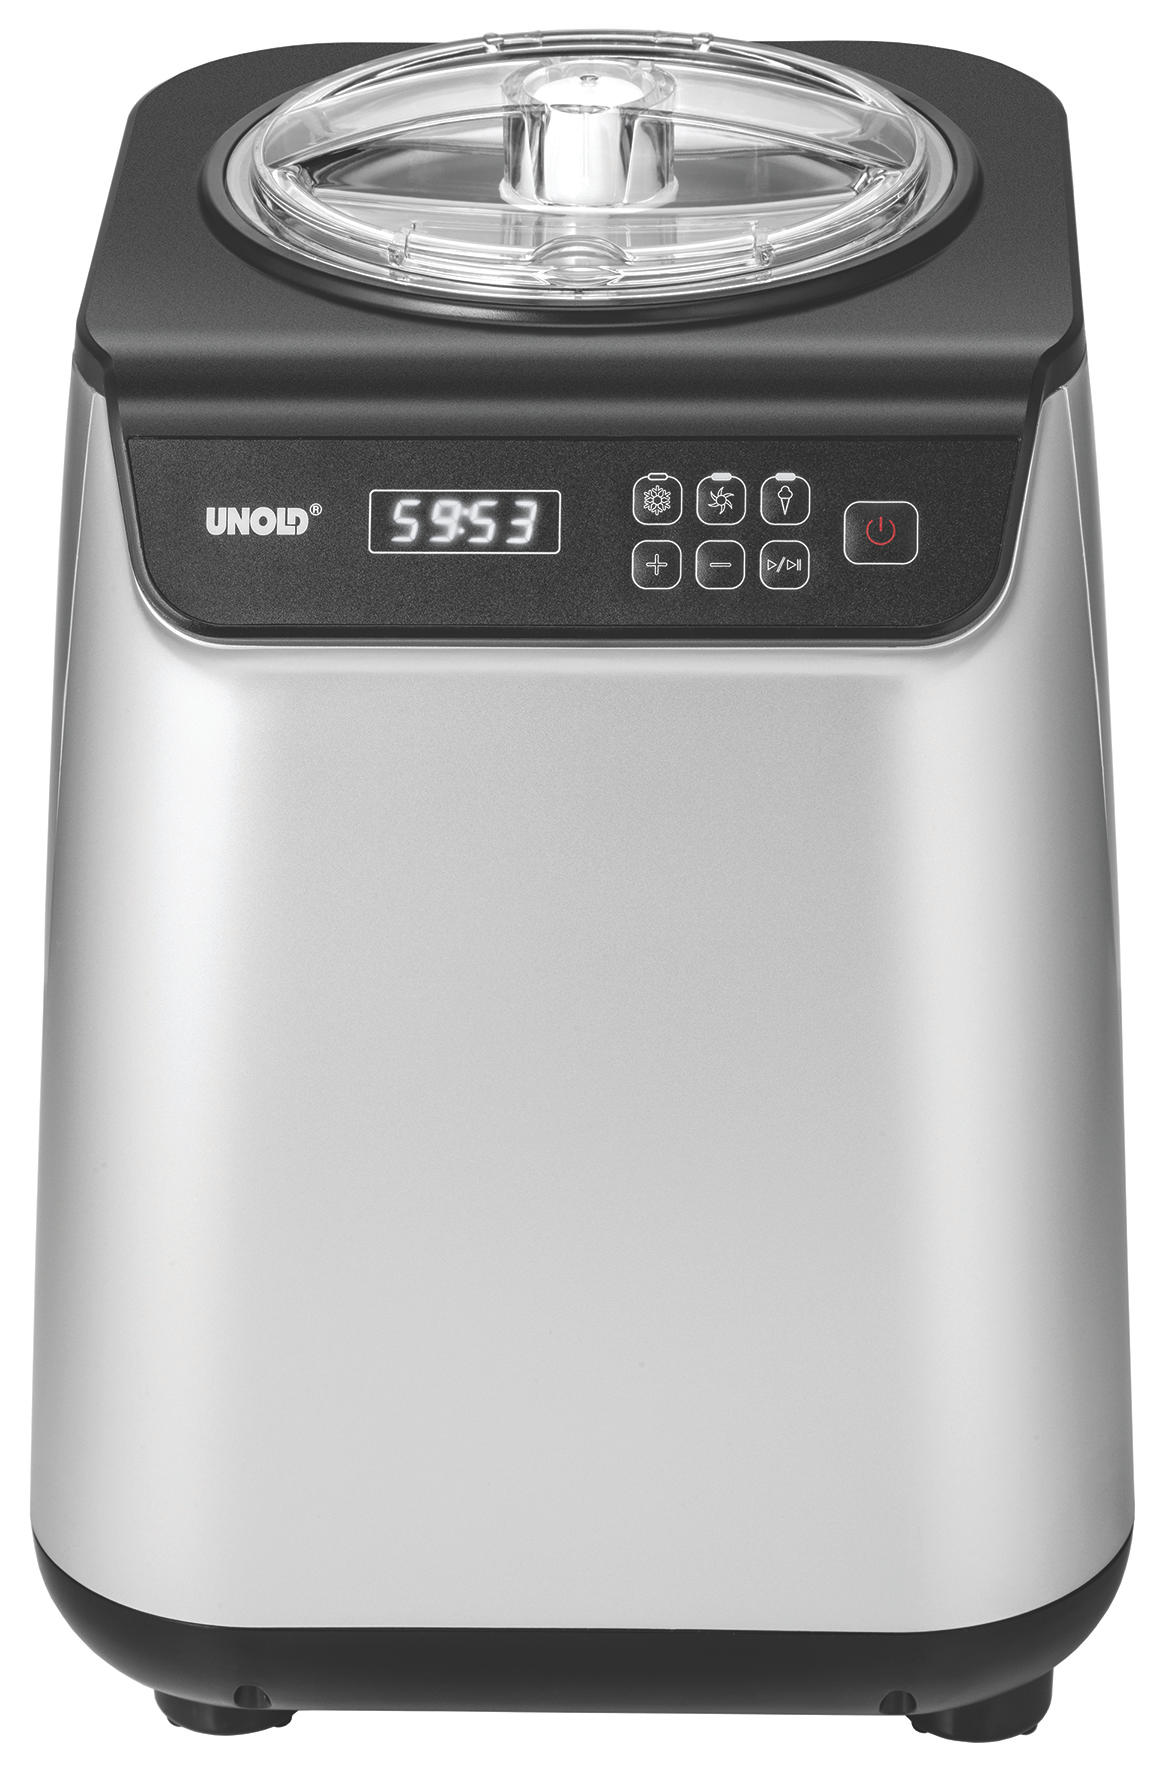 UNOLD Uno 48825 Eismaschine Watt, Silber/Schwarz) (135